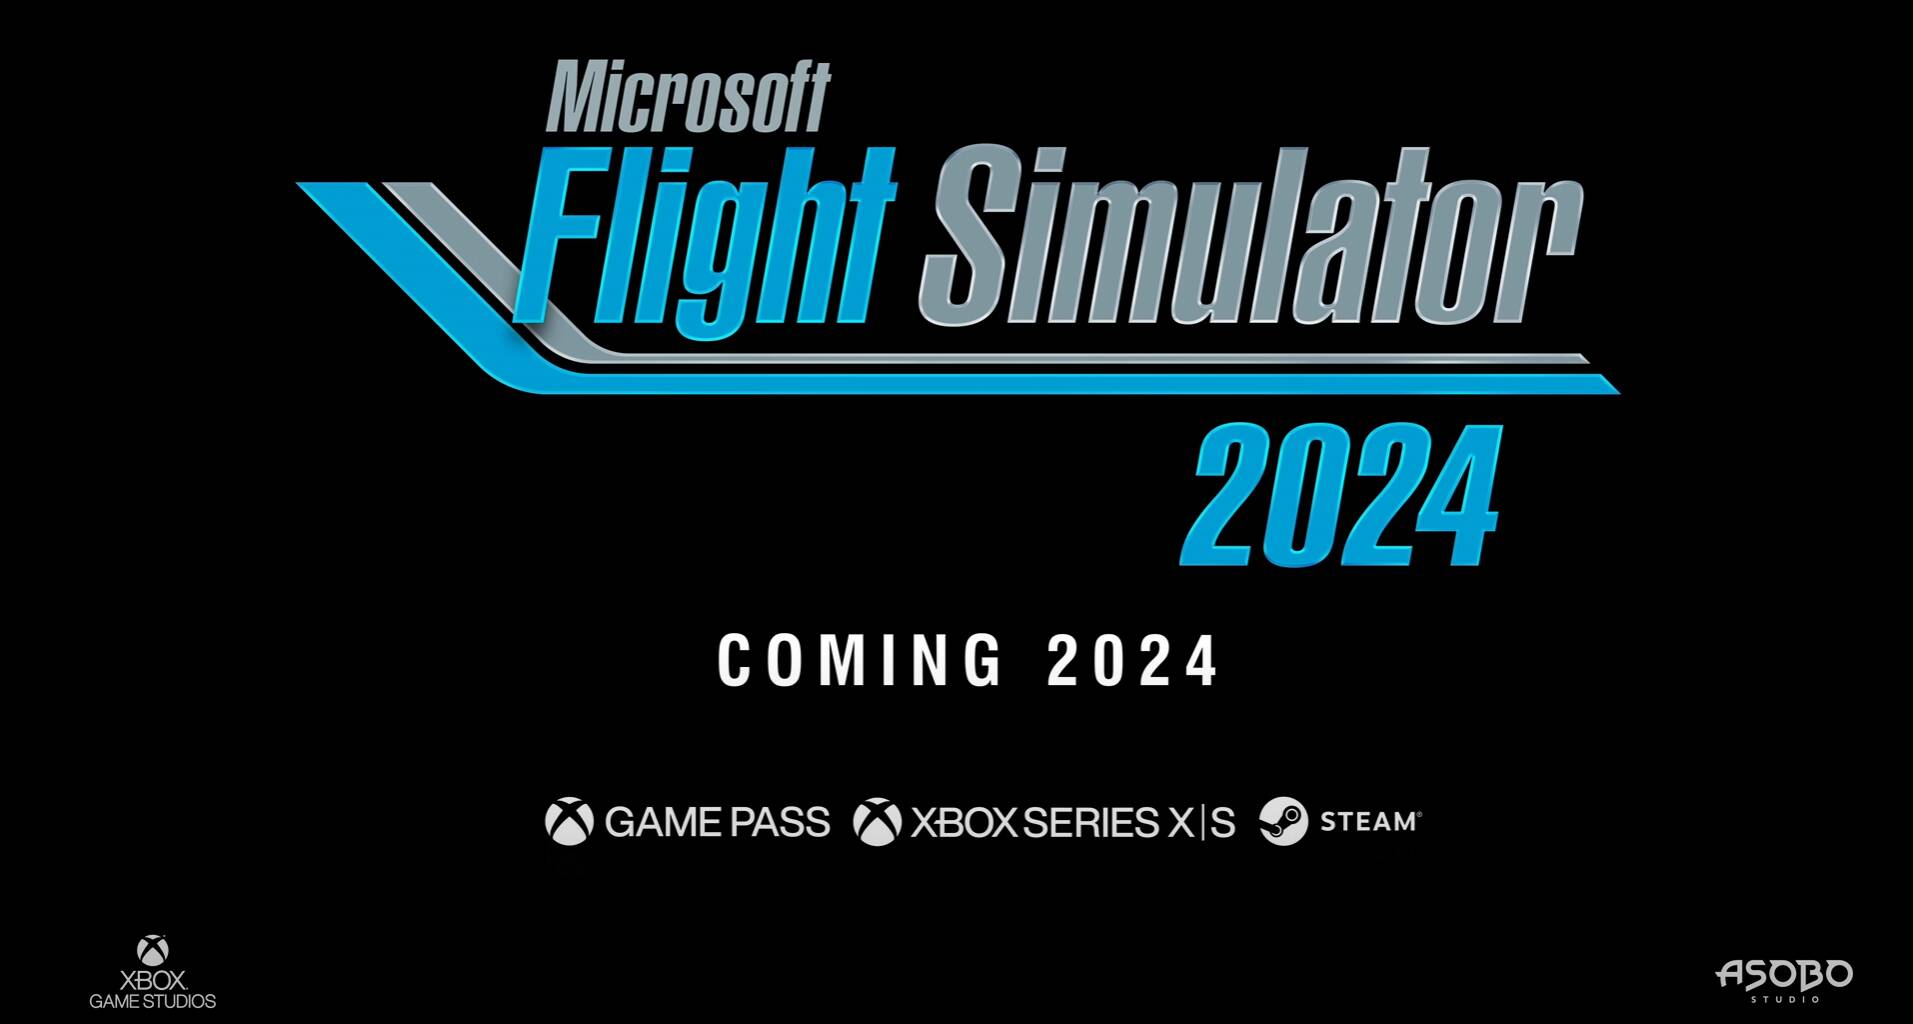 Microsoft Flight Simulator 2024 Announced 2818 by DrewmorKuZy